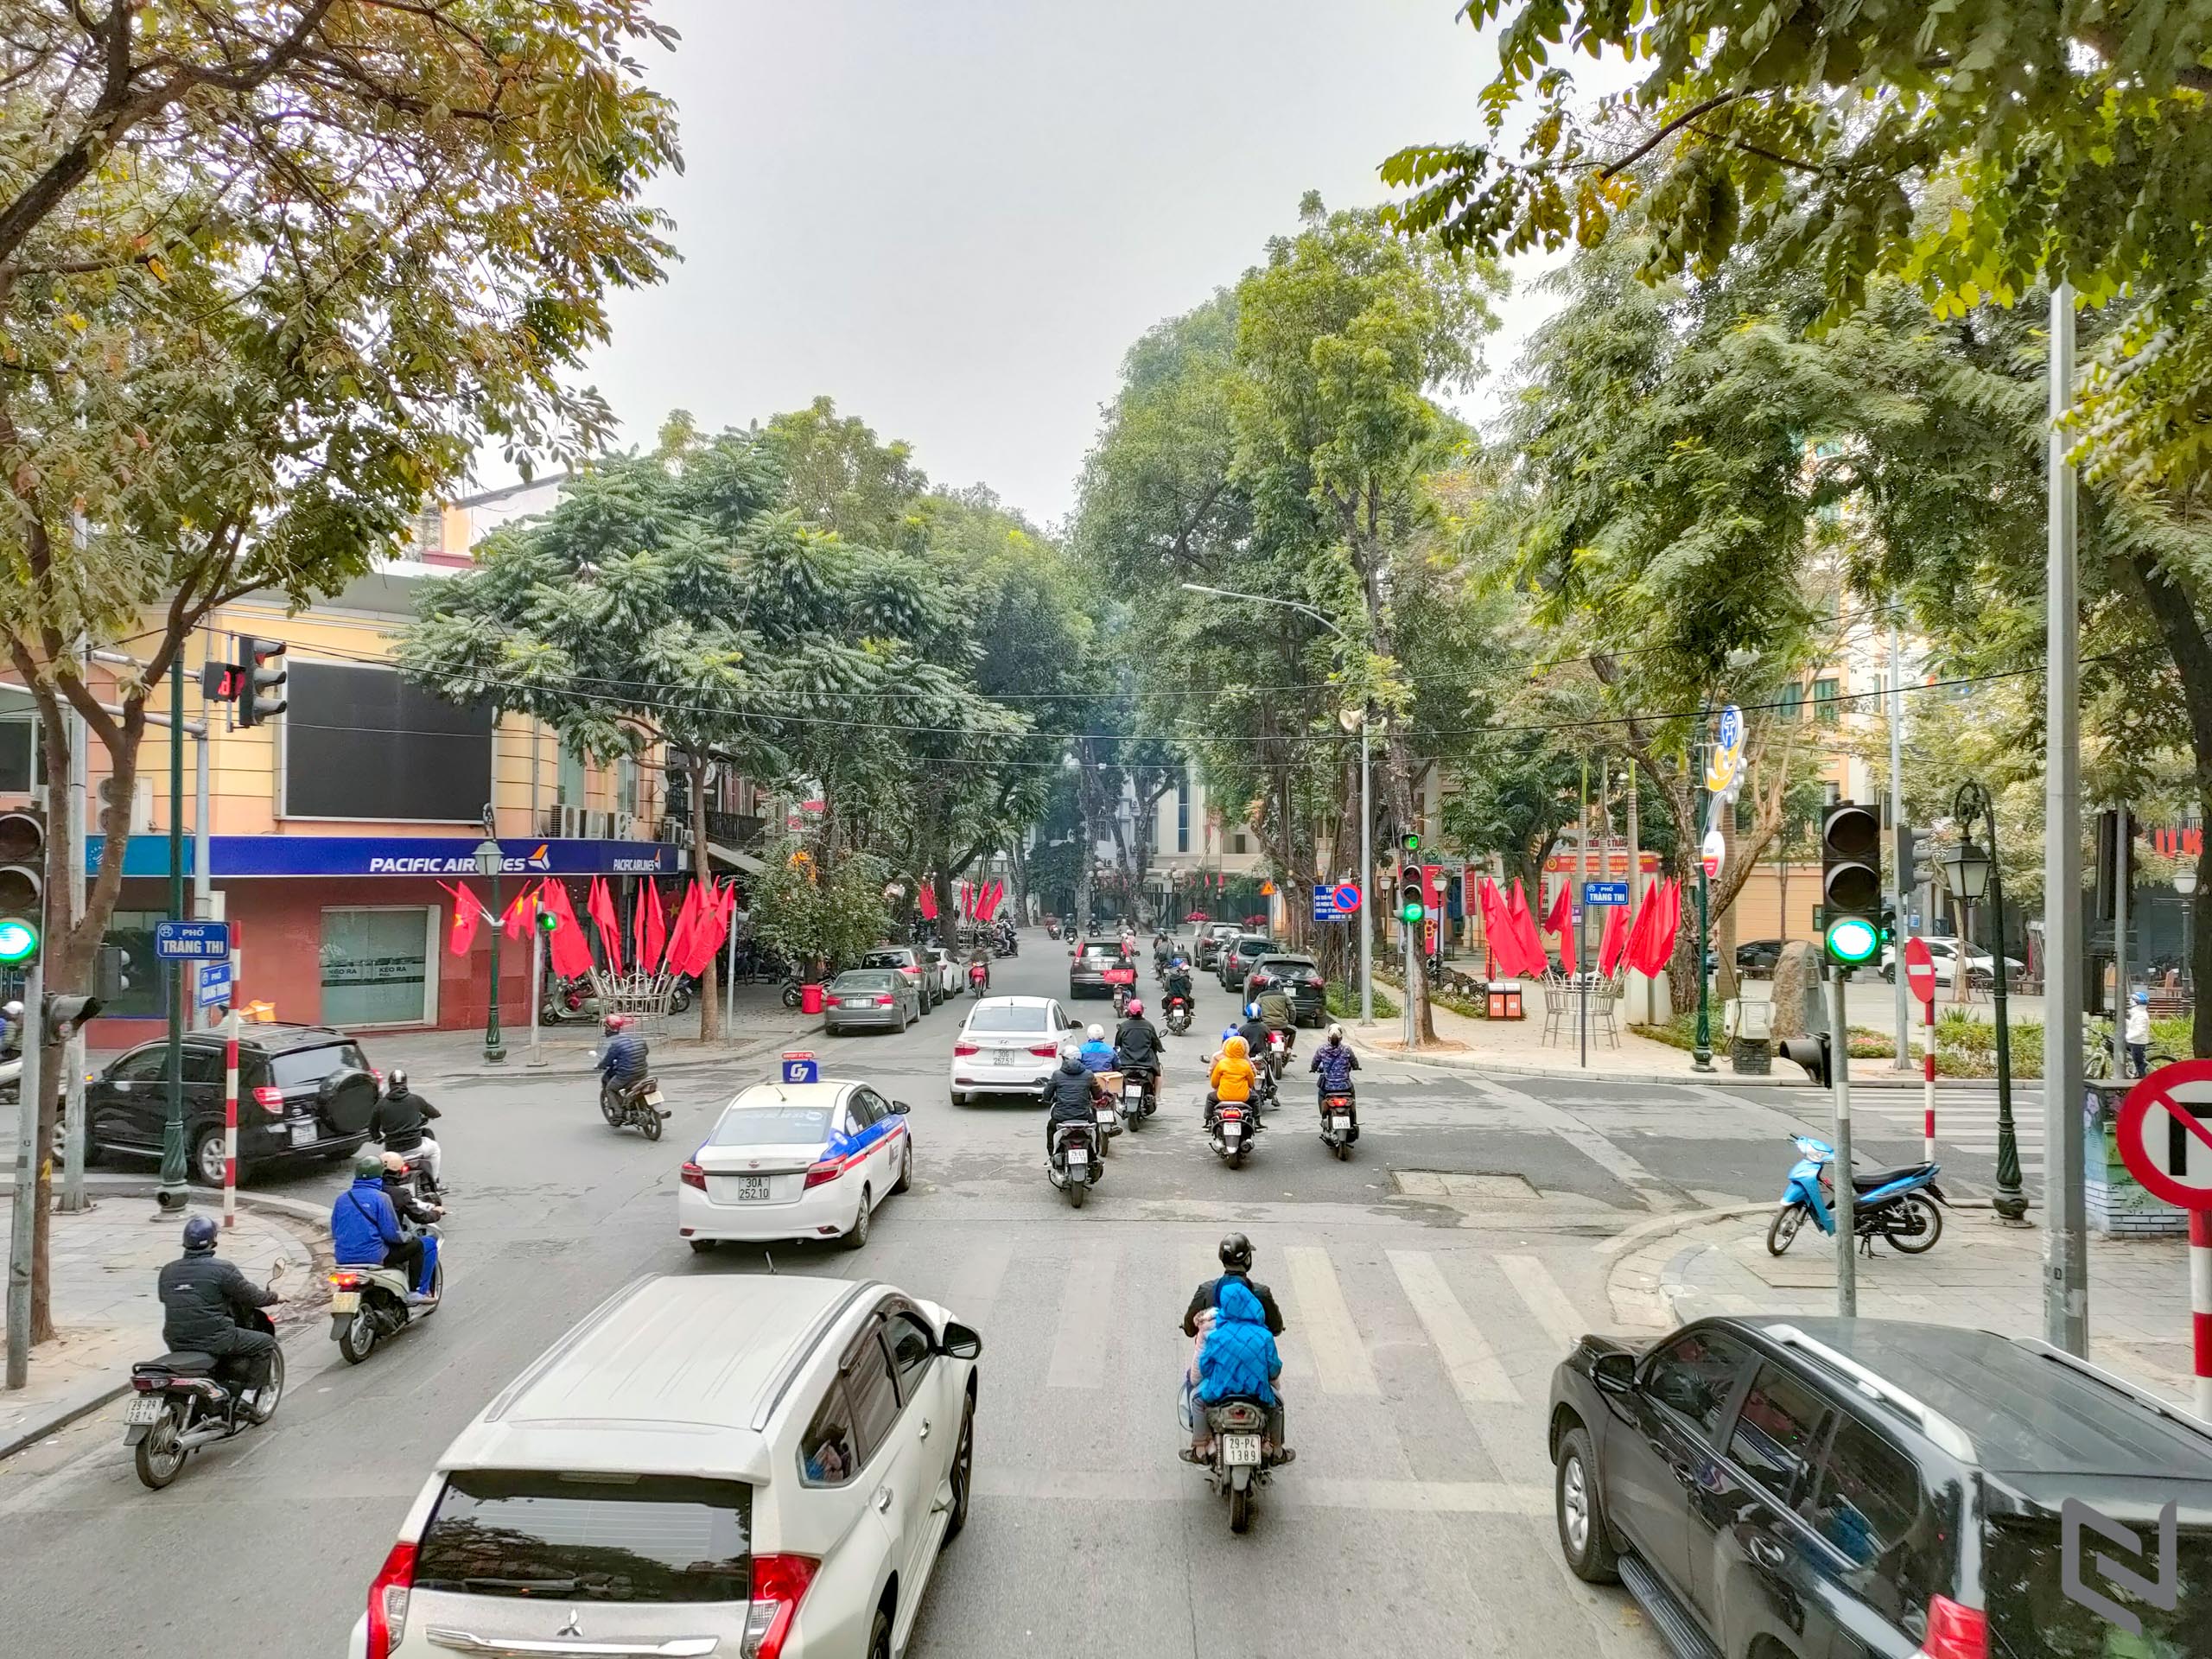 Bộ ảnh du lịch Hà Nội bằng xe bus 2 tầng chụp bởi OPPO Reno5